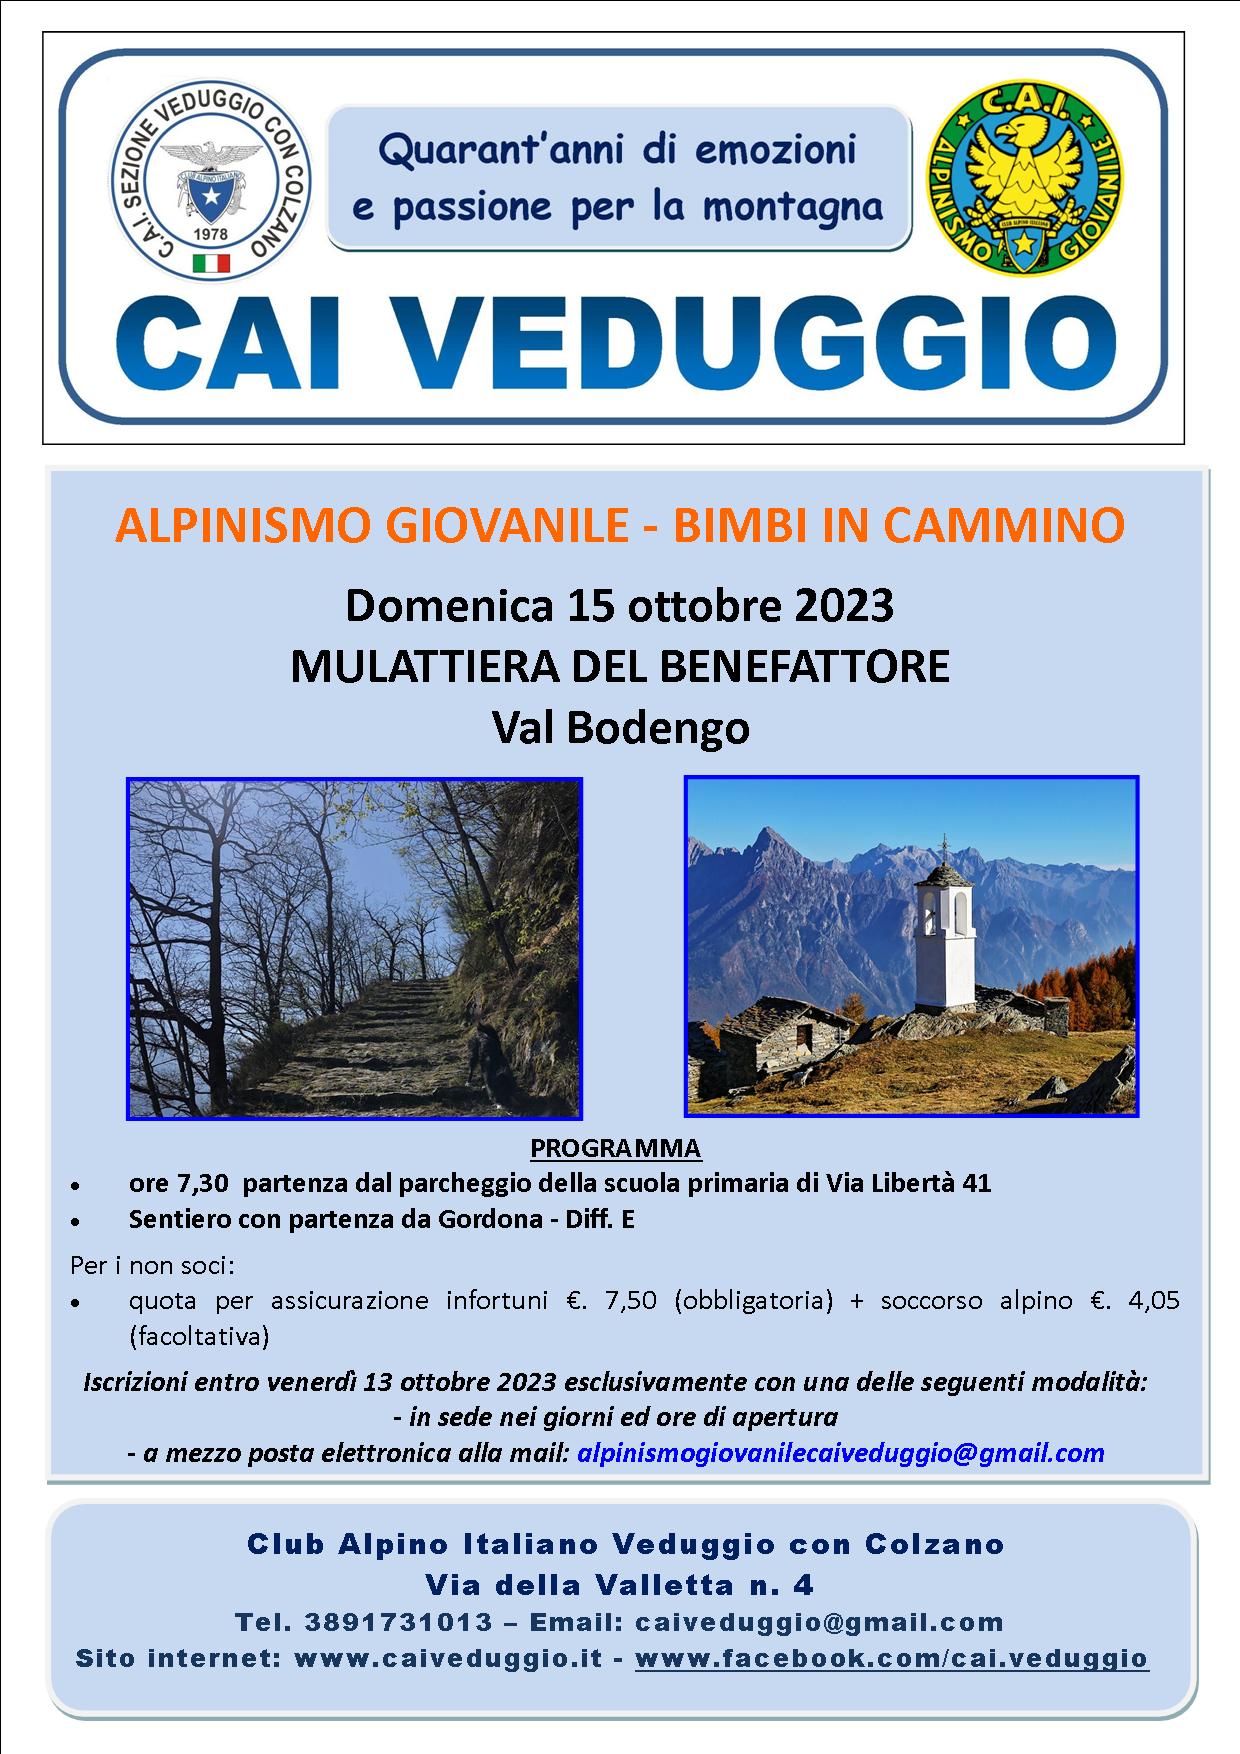 Domenica 15 ottobre 2023 – Mulattiera del Benefattore (Val Bodengo) – Alpinismo Giovanile/Bimbi in cammino